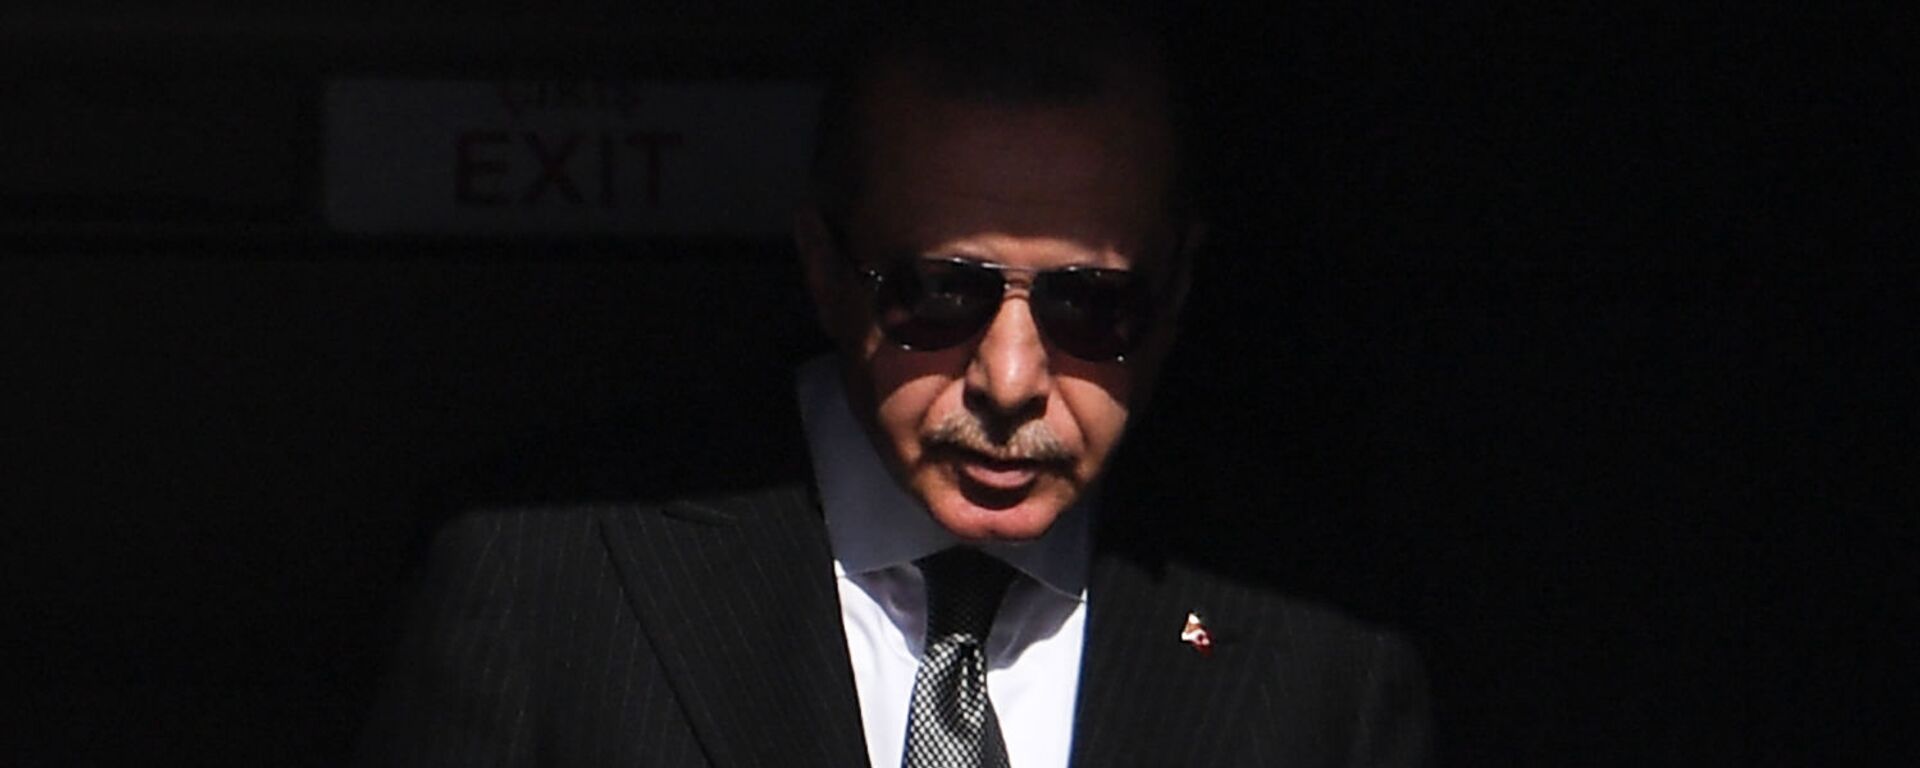 Президент Турции Реджеп Тайип Эрдоган прибывает в аэропорт Кельна (29 сентября 2018). Германия - Sputnik Армения, 1920, 22.05.2021